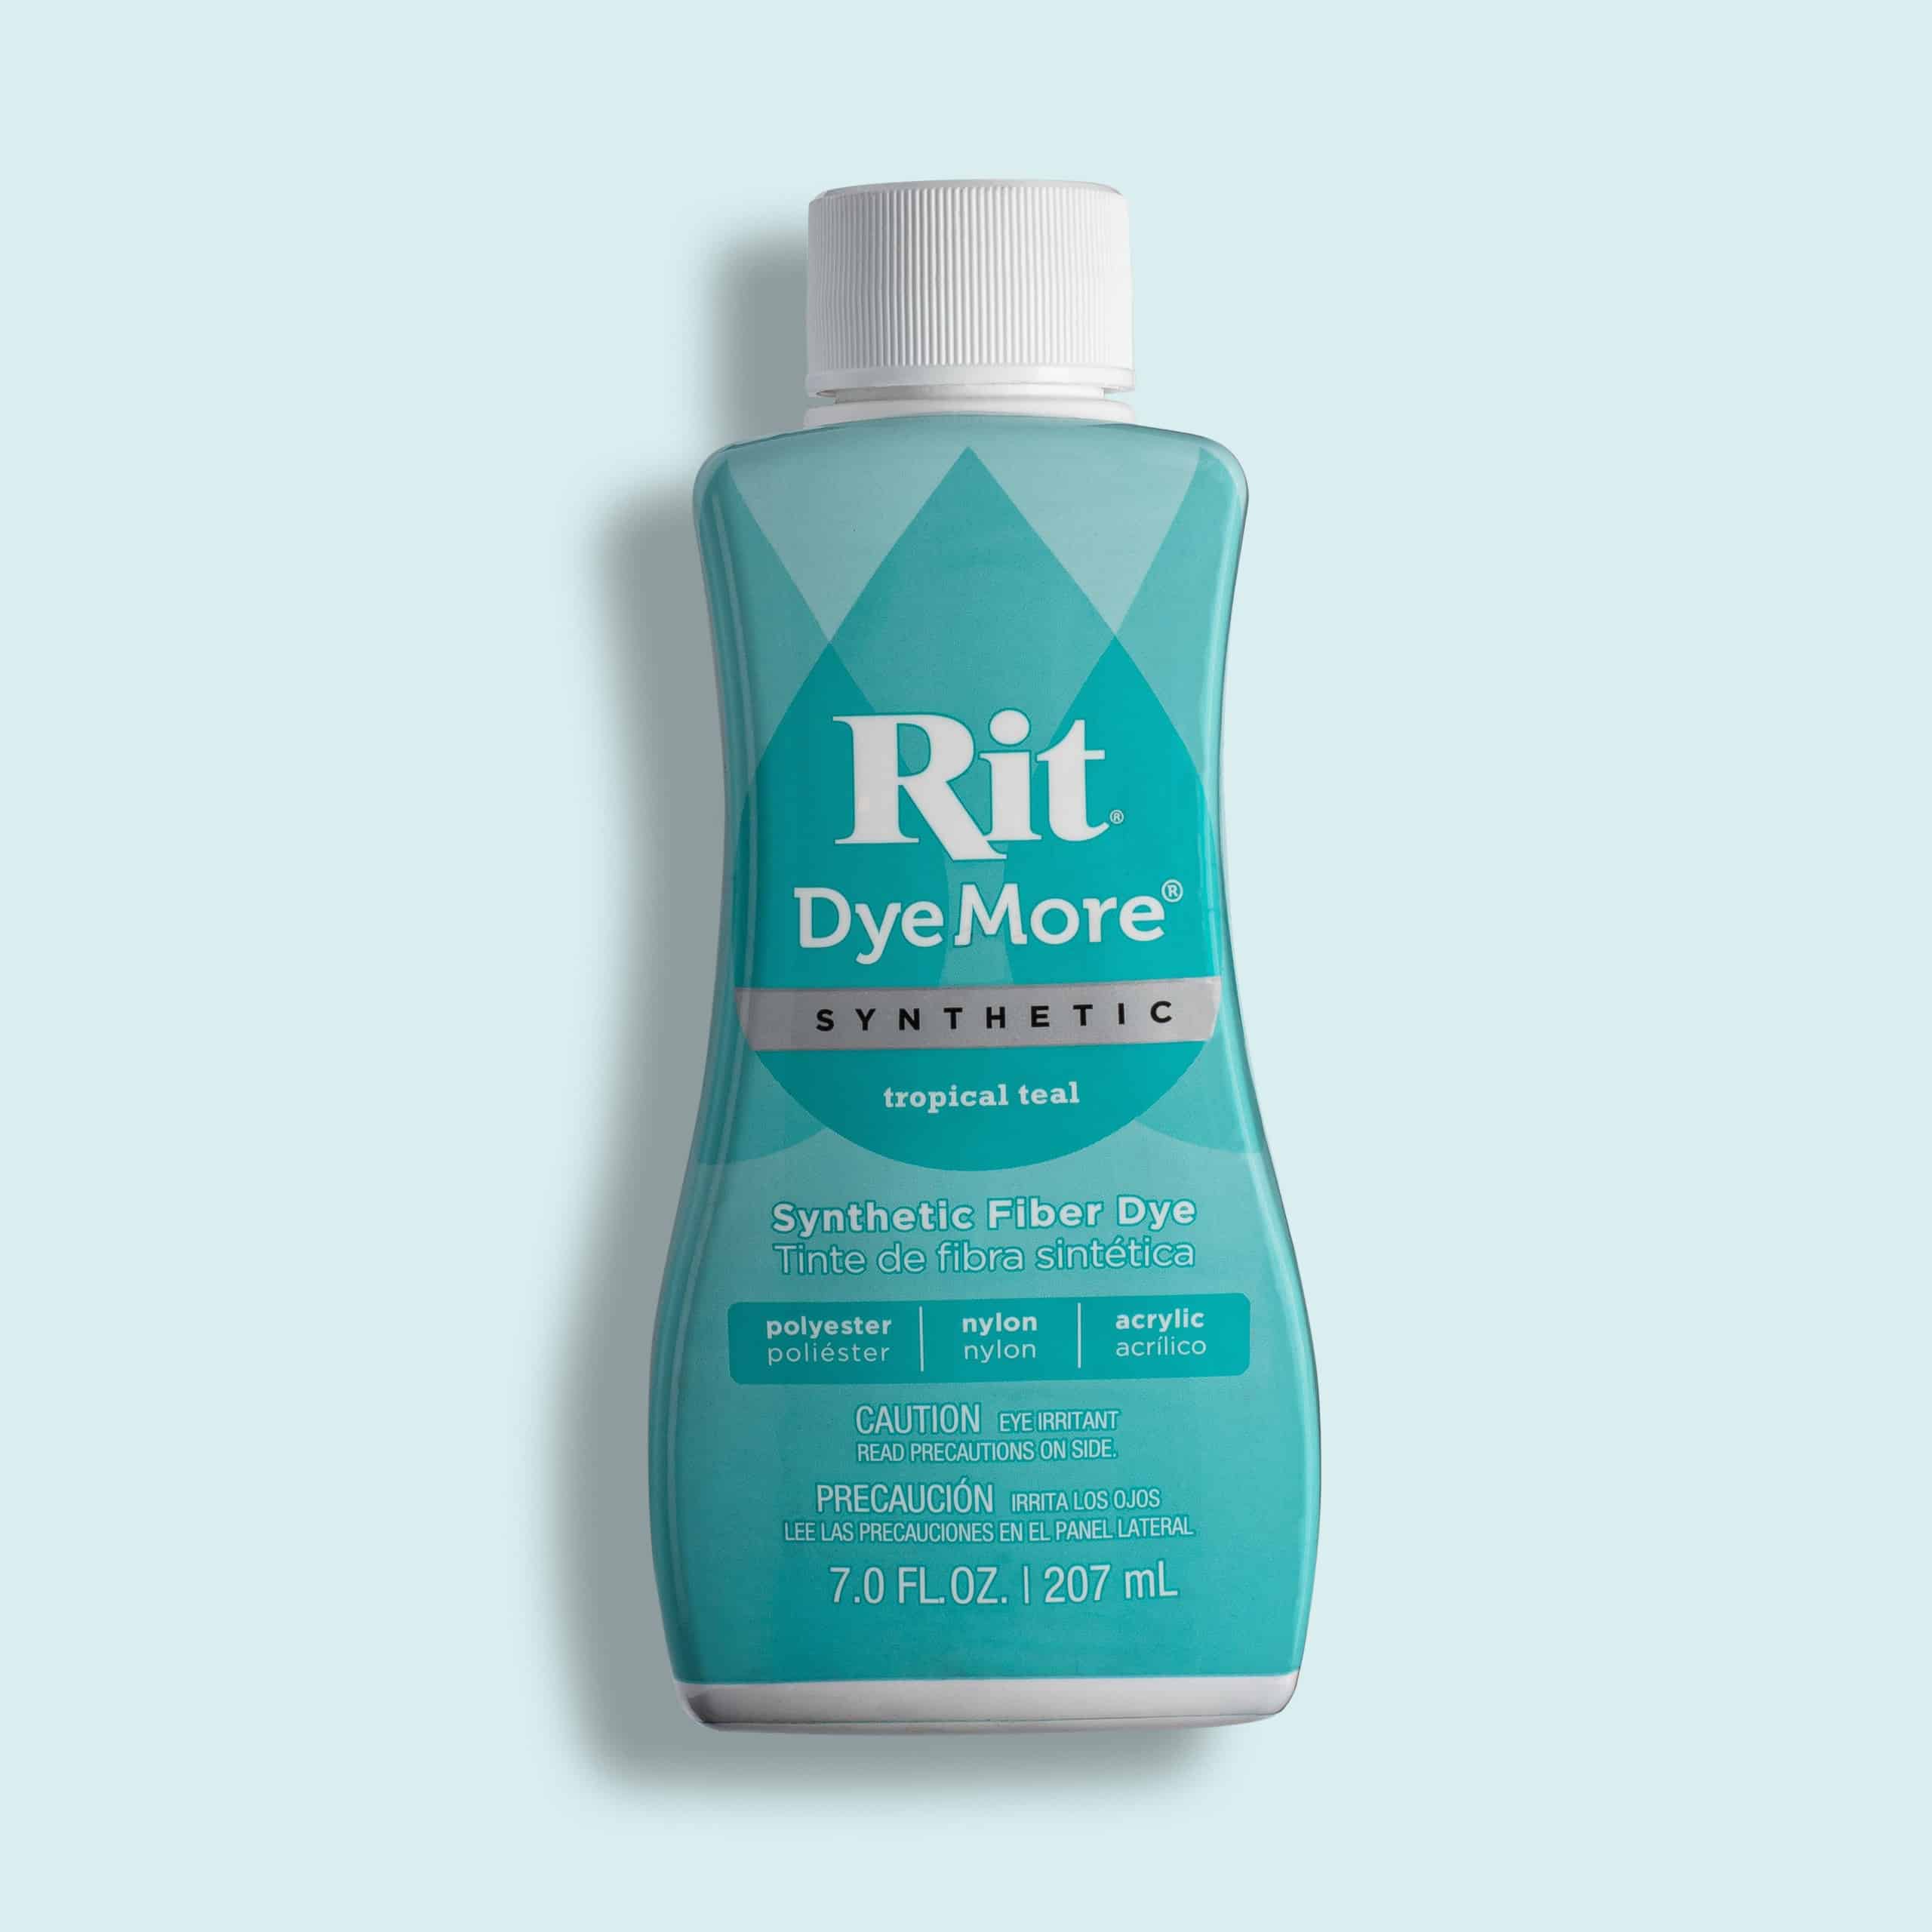 Rit DyeMore Synthetic Fiber Dye, Tropical Teal - 7.0 fl oz